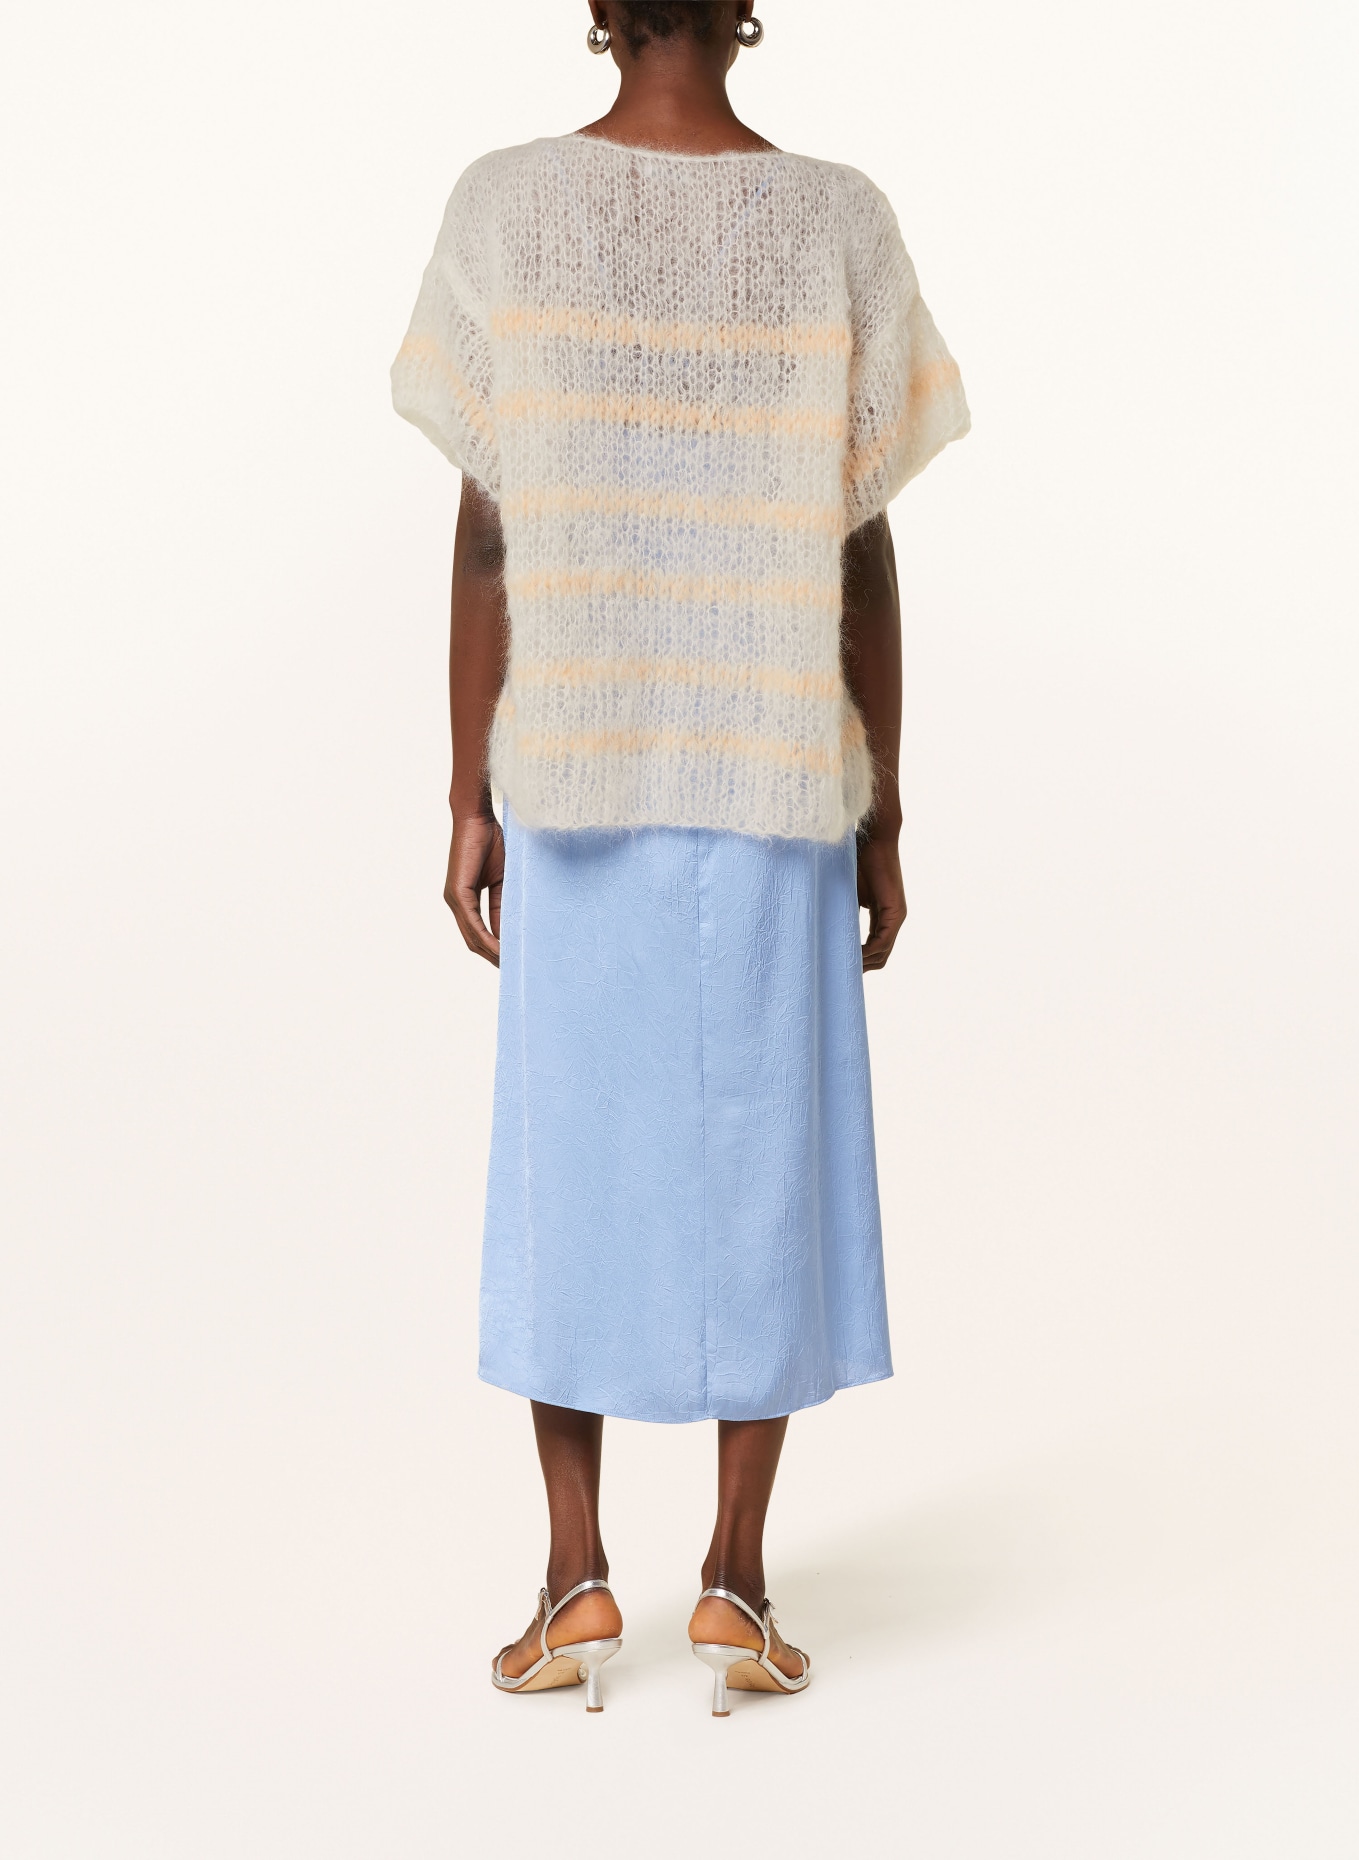 MAIAMI Strickshirt aus Mohair, Farbe: WEISS/ ROT/ BLAU (Bild 3)